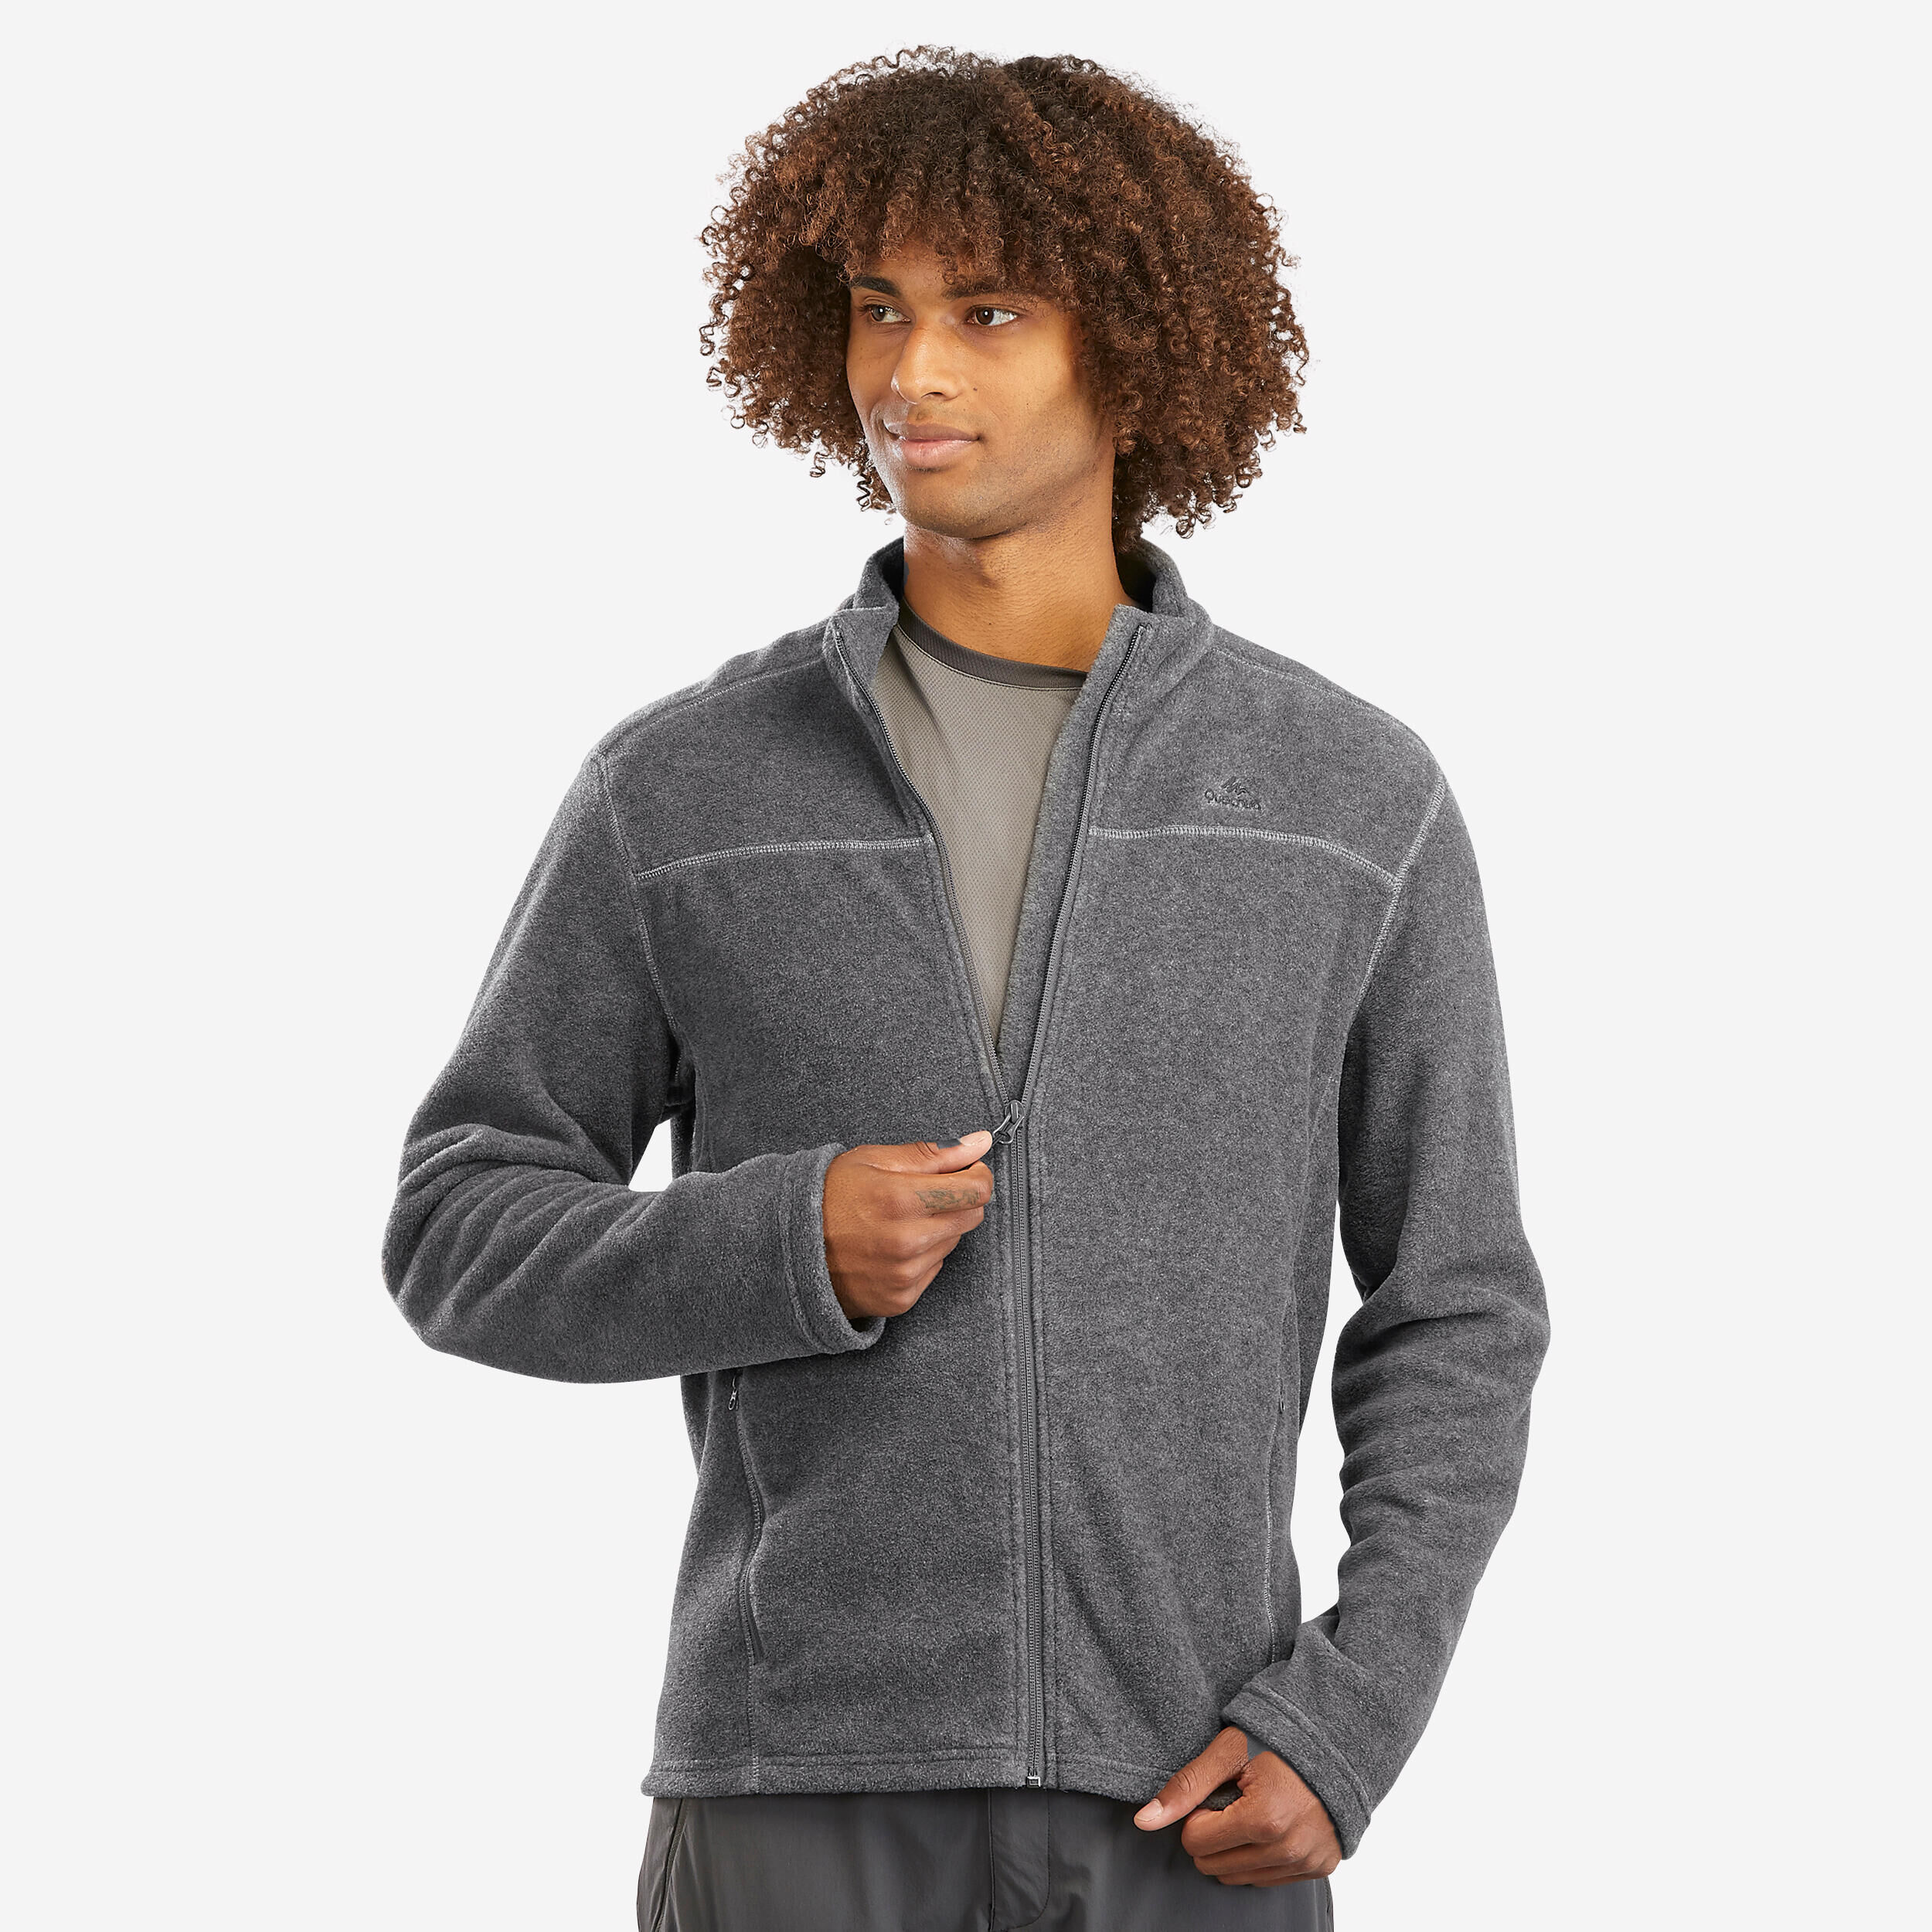 Men's Fleece Tops & Fleece Jackets